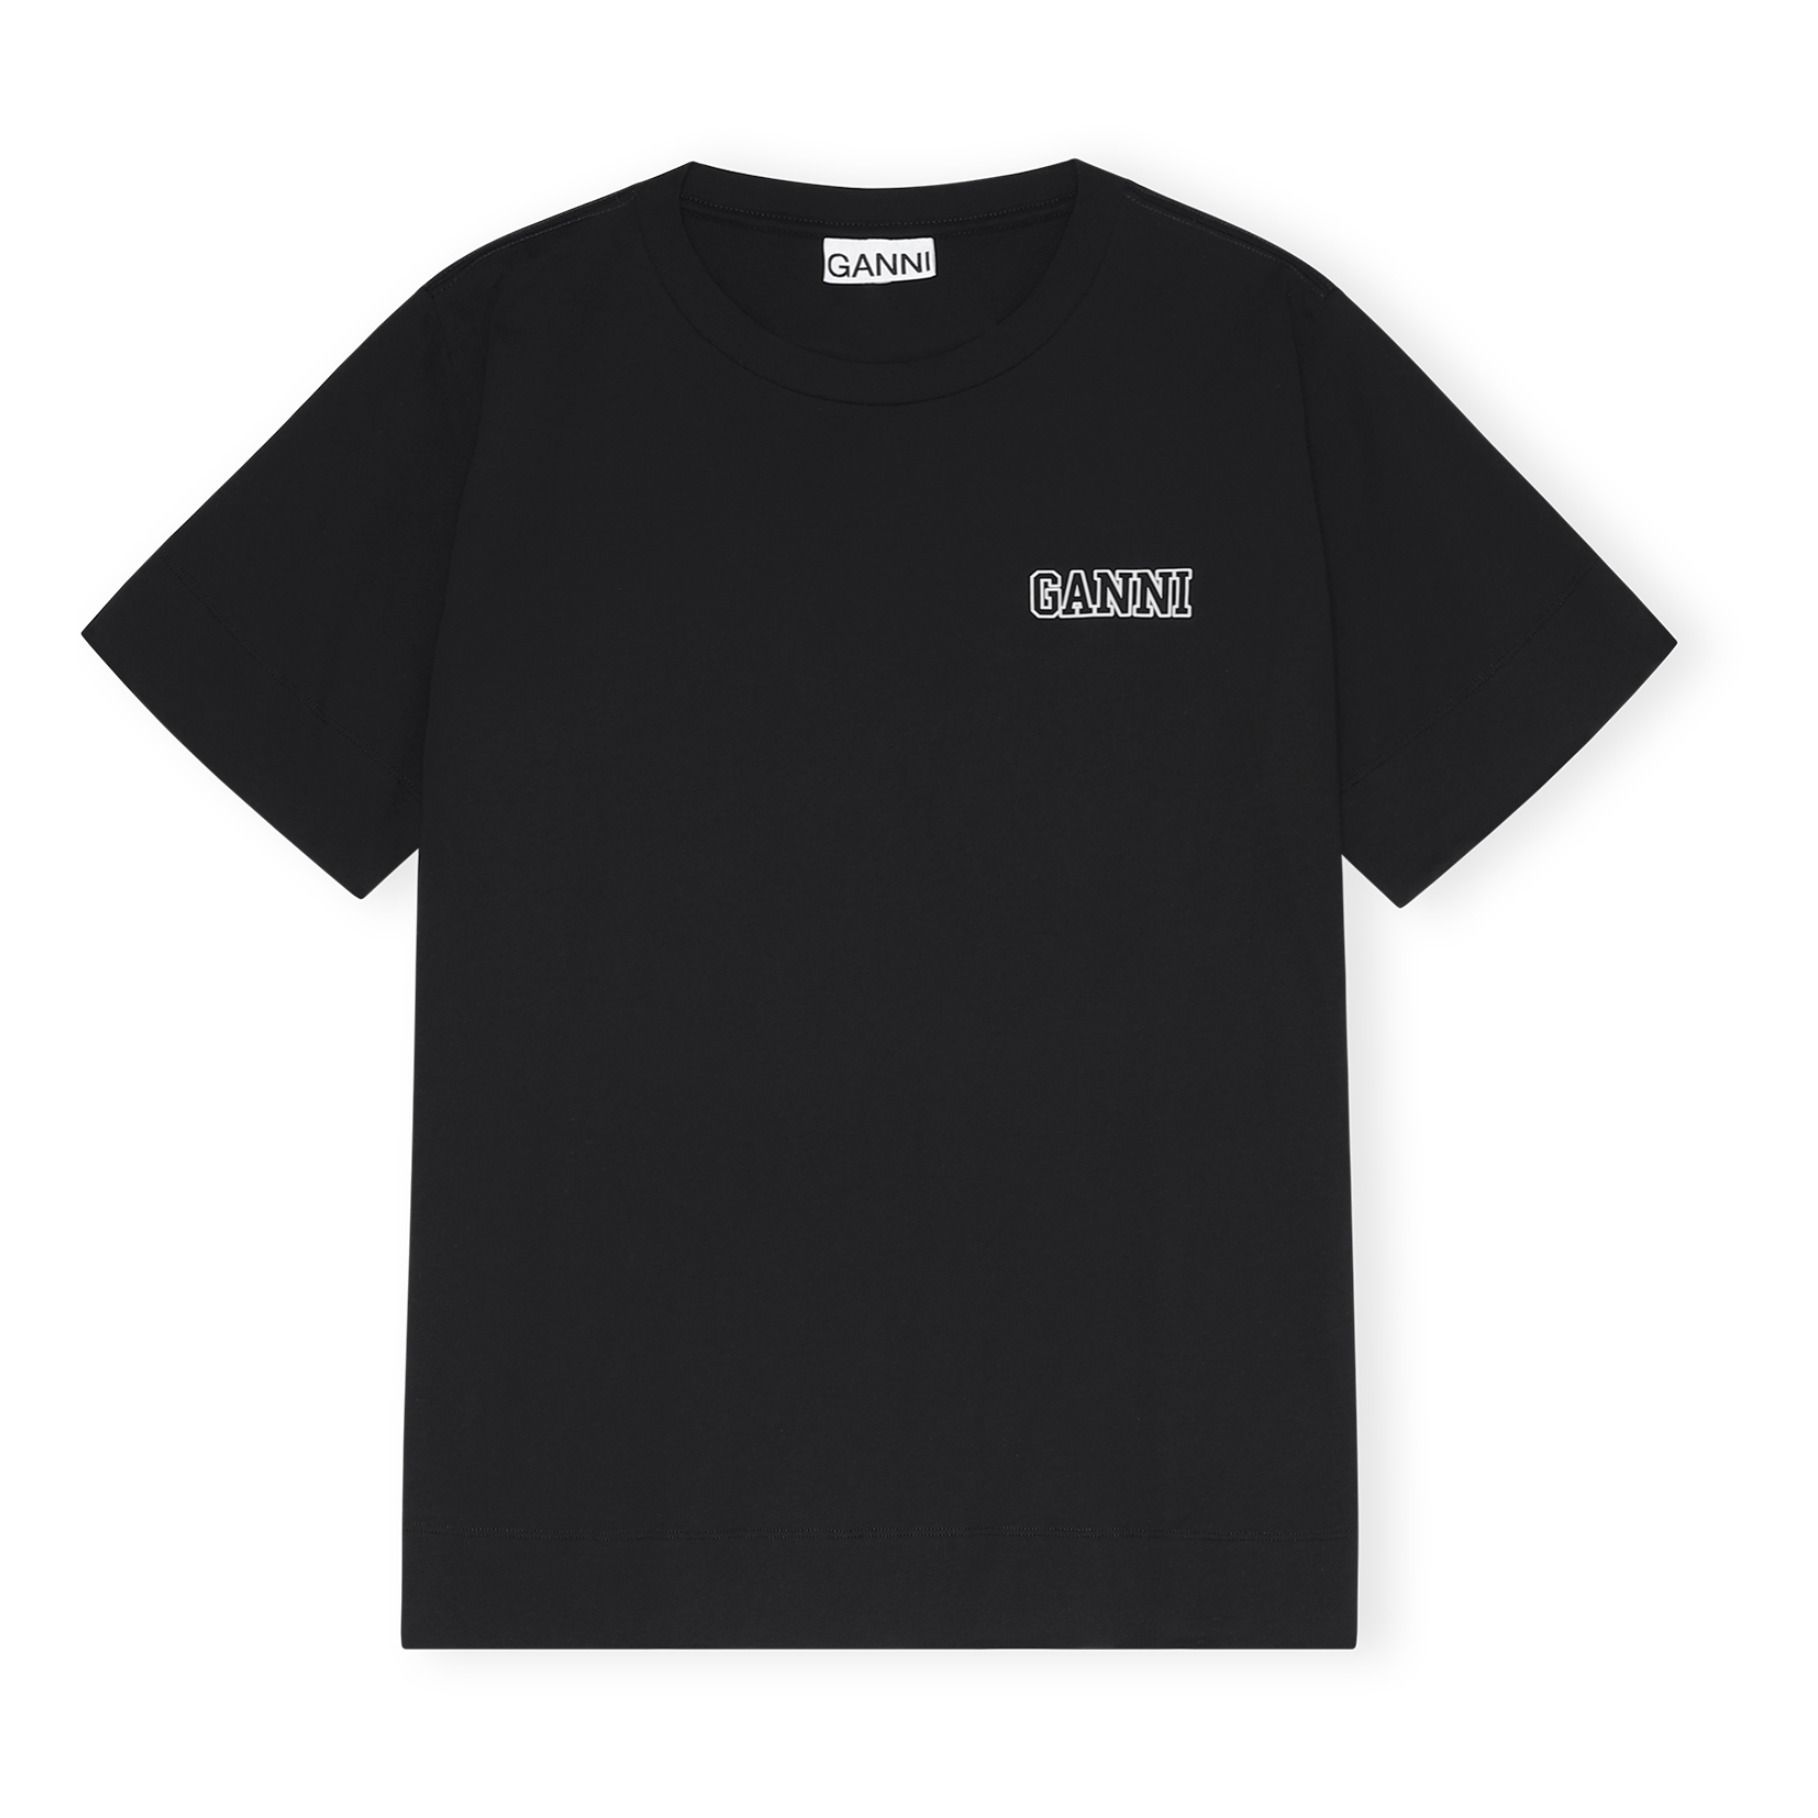 Ganni - T-shirt Software Coton Recyclé - Femme - Noir